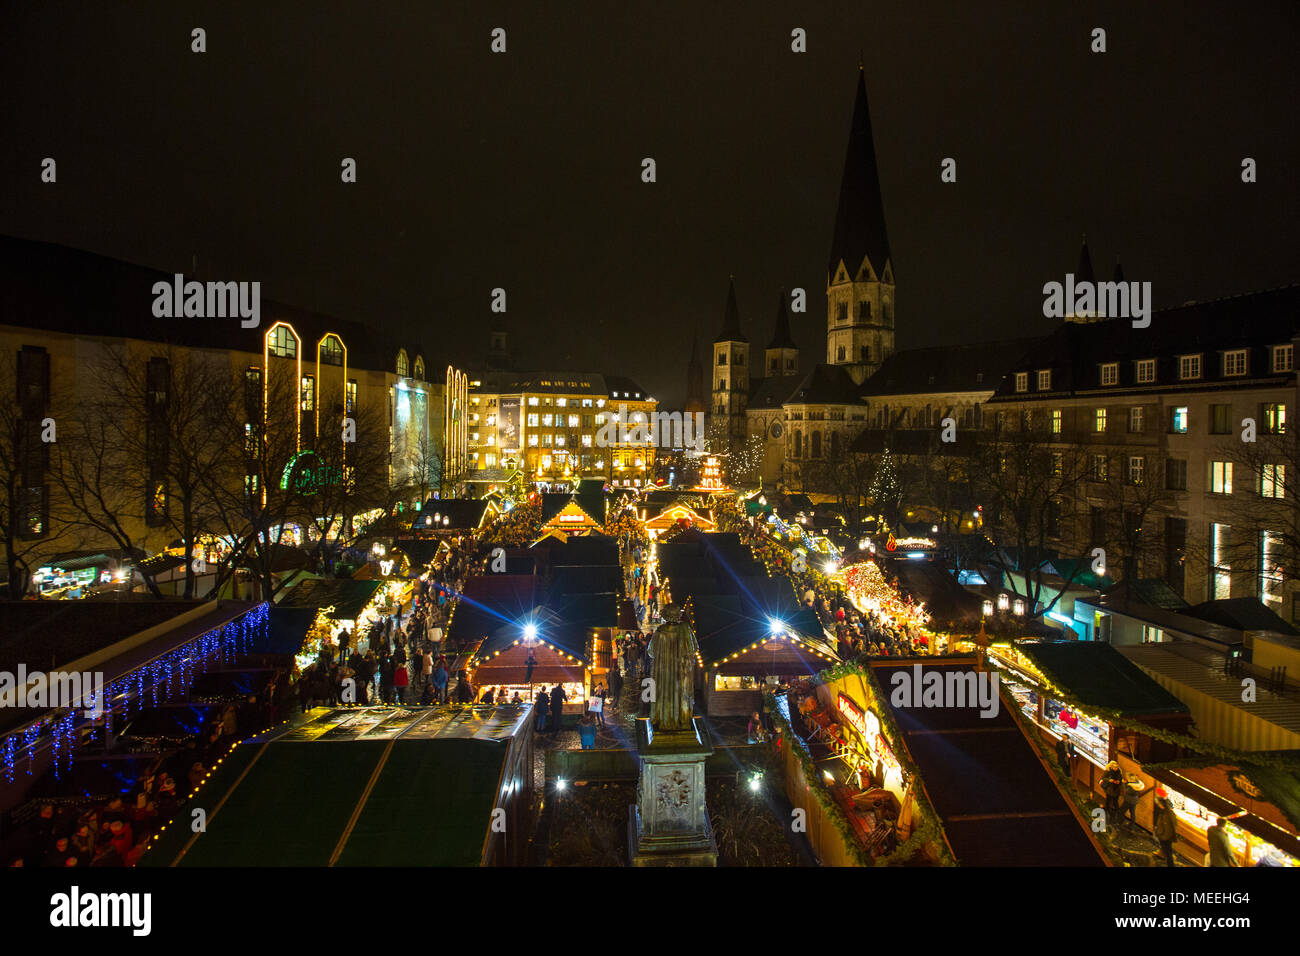 Traditionelle Weihnachtsmarkt oder Weihnachtsmarkt in Bonn, Nordrhein-Westfalen, Deutschland. Stockfoto